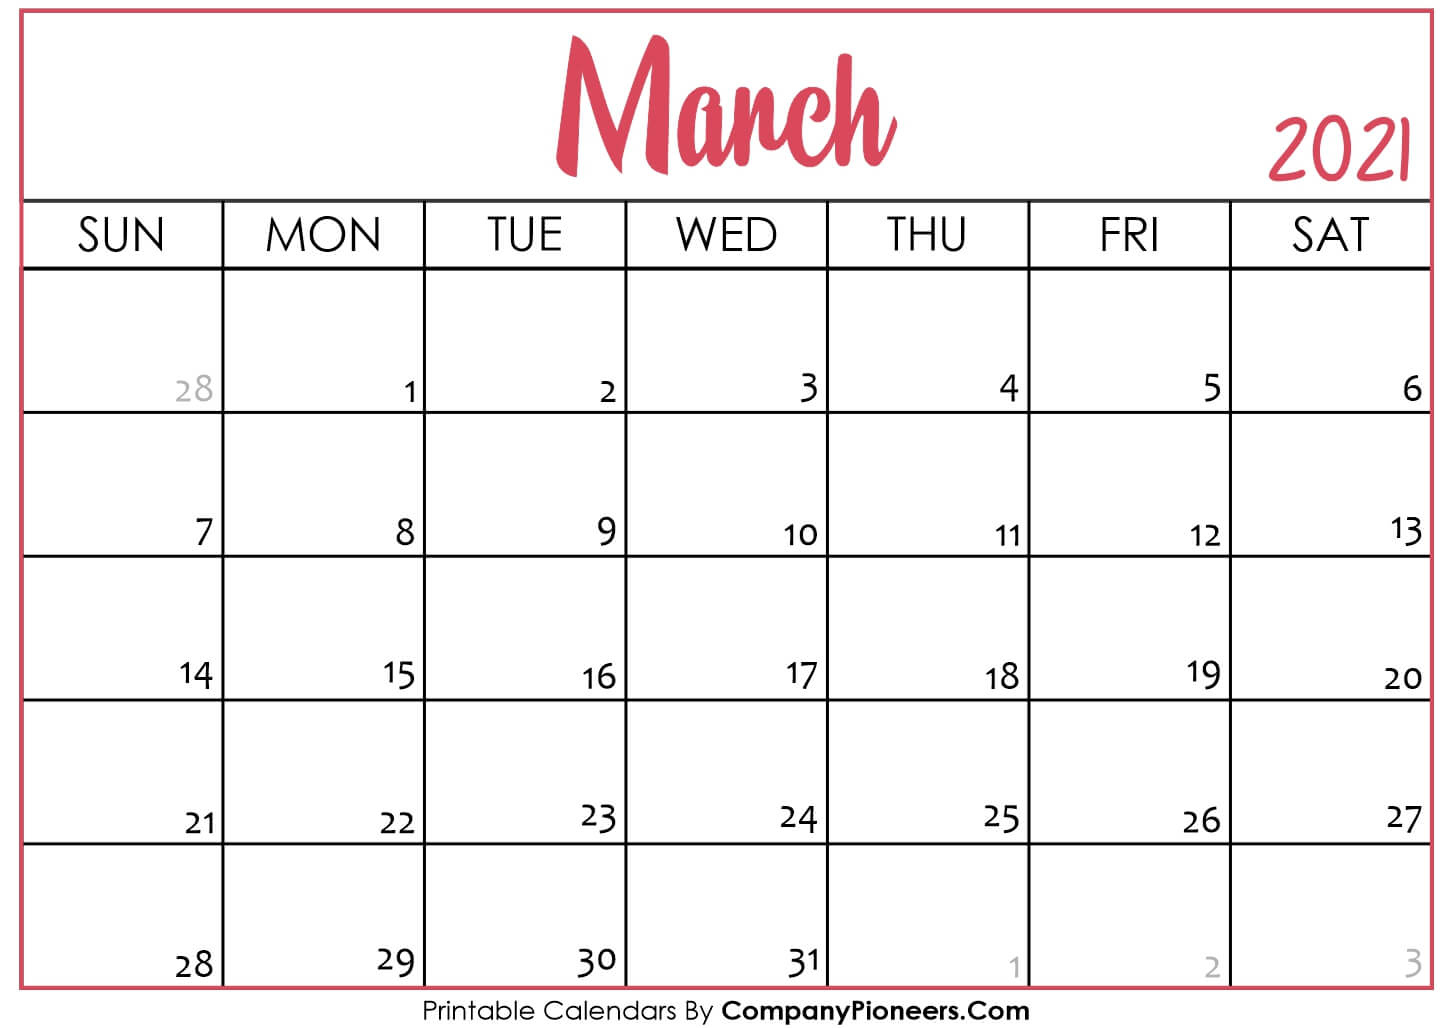 March 2021 Calendar Printable - Printable 2020 Calendars Calendar From November 2020 To March 2021